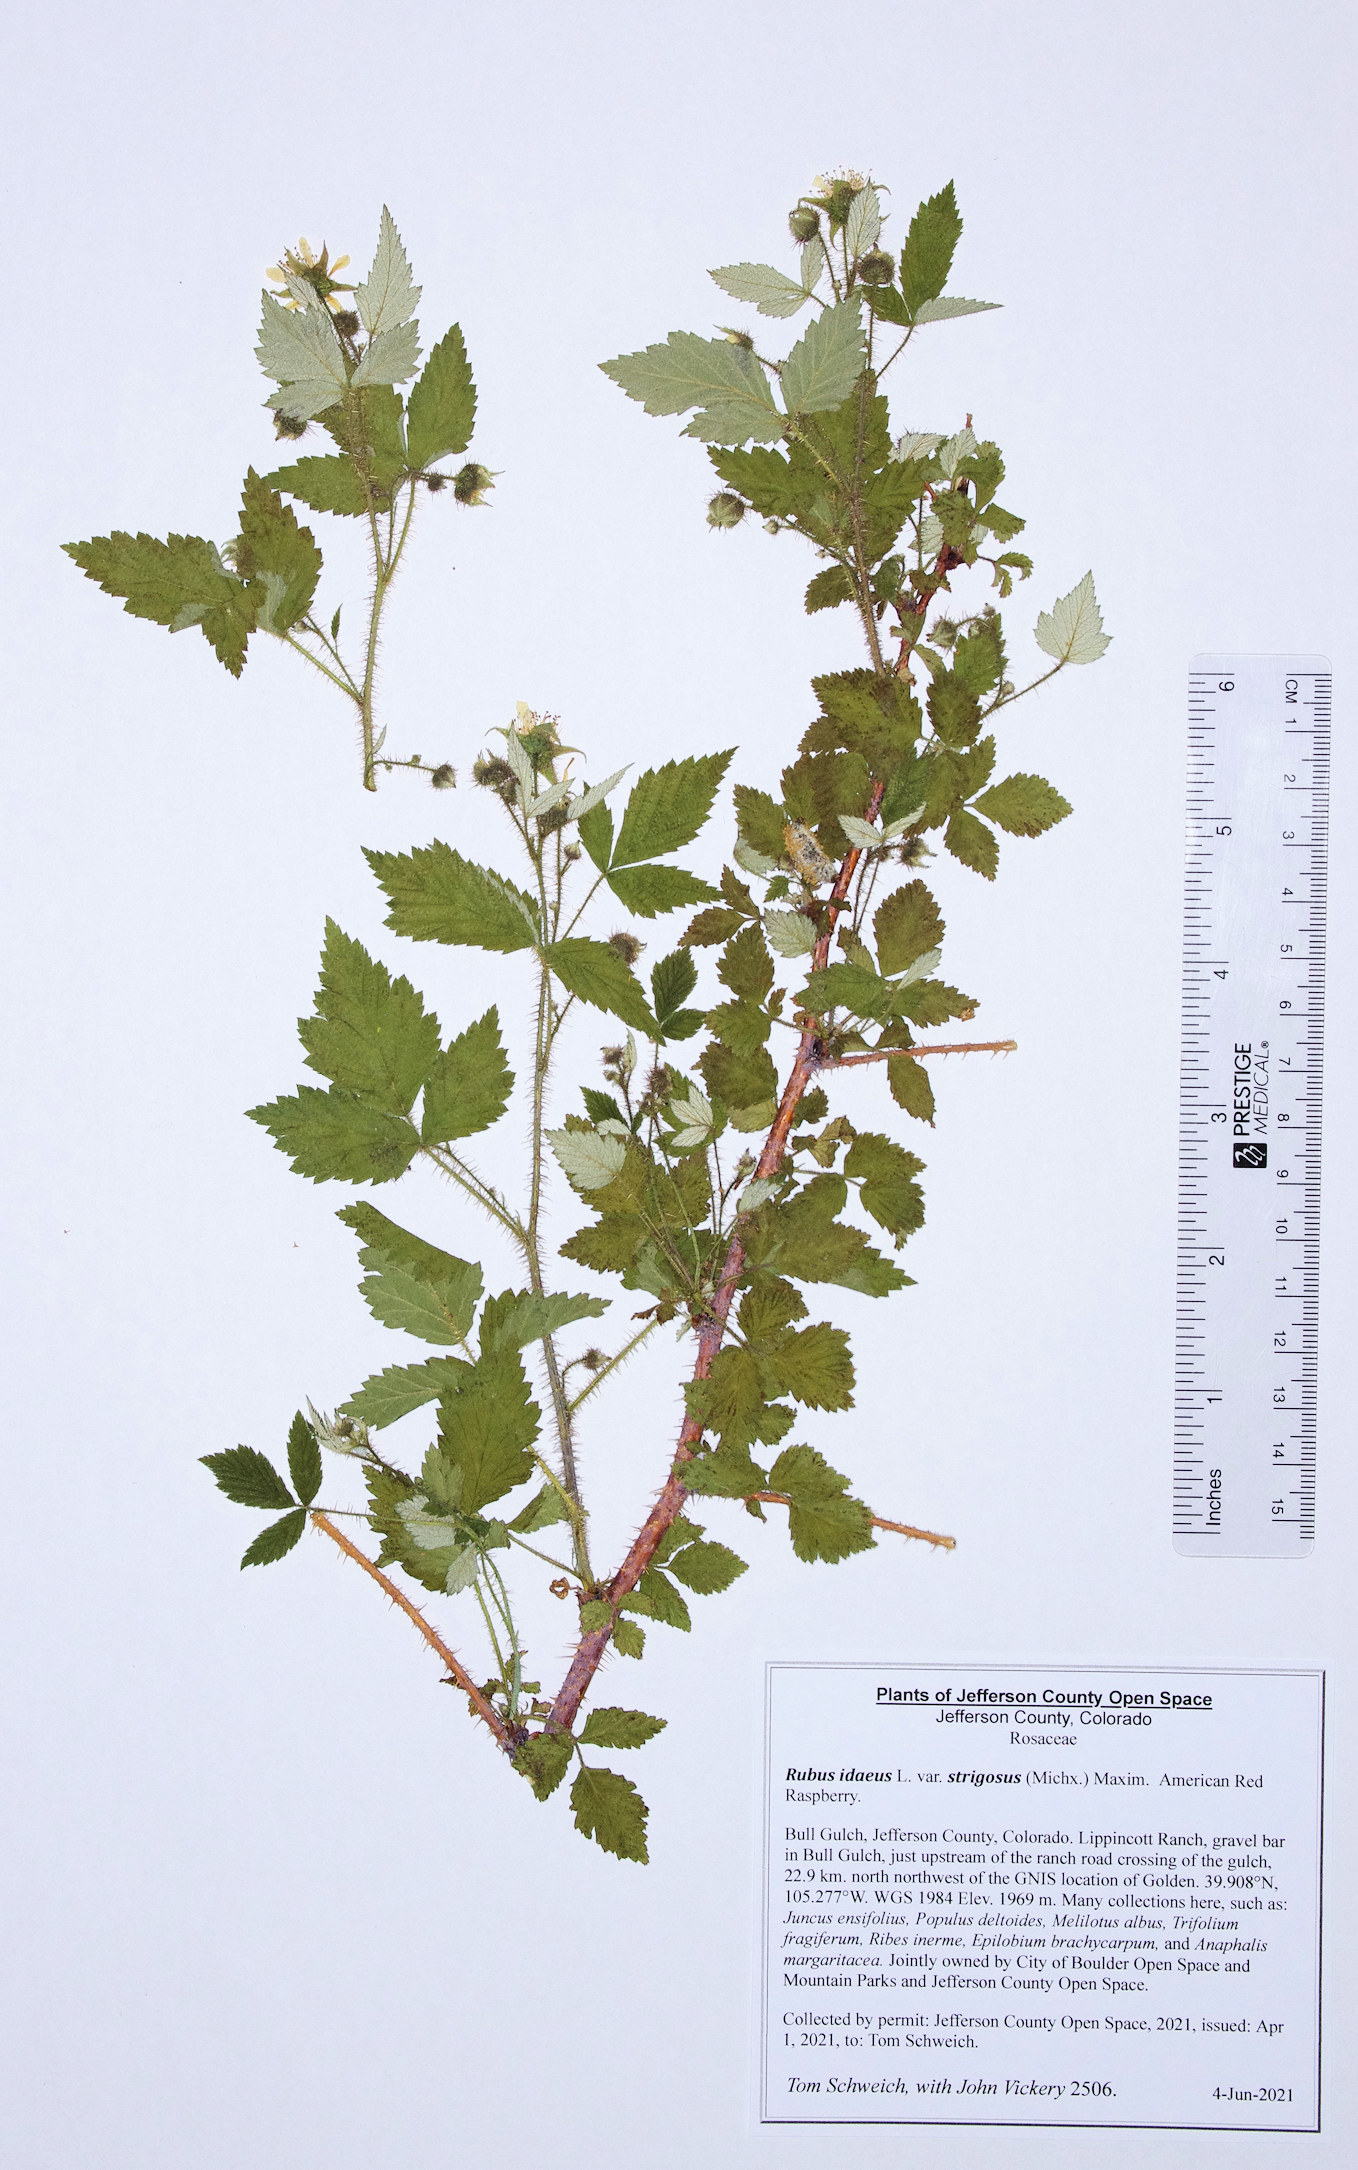 Rosaceae Rubus idaeus strigosus